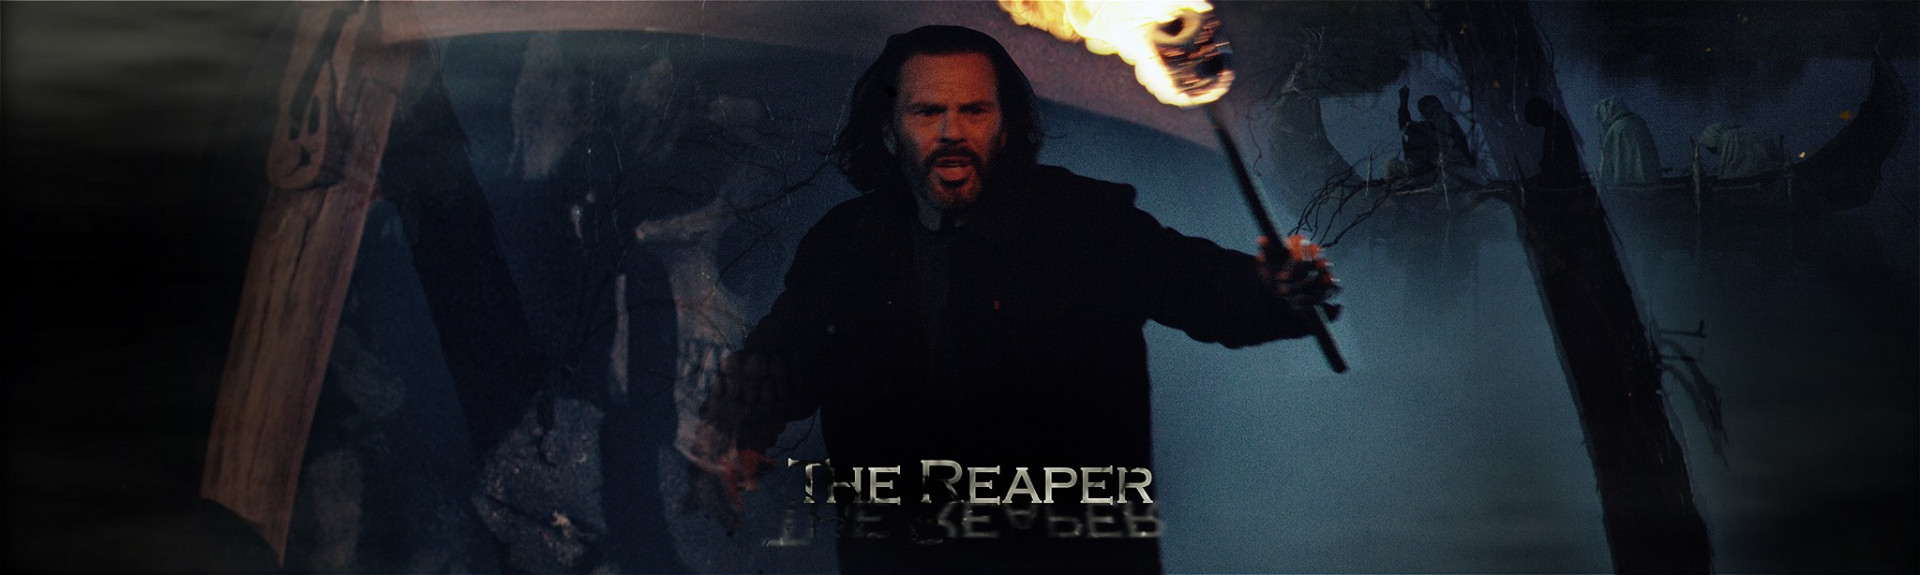 The Reaper 3D